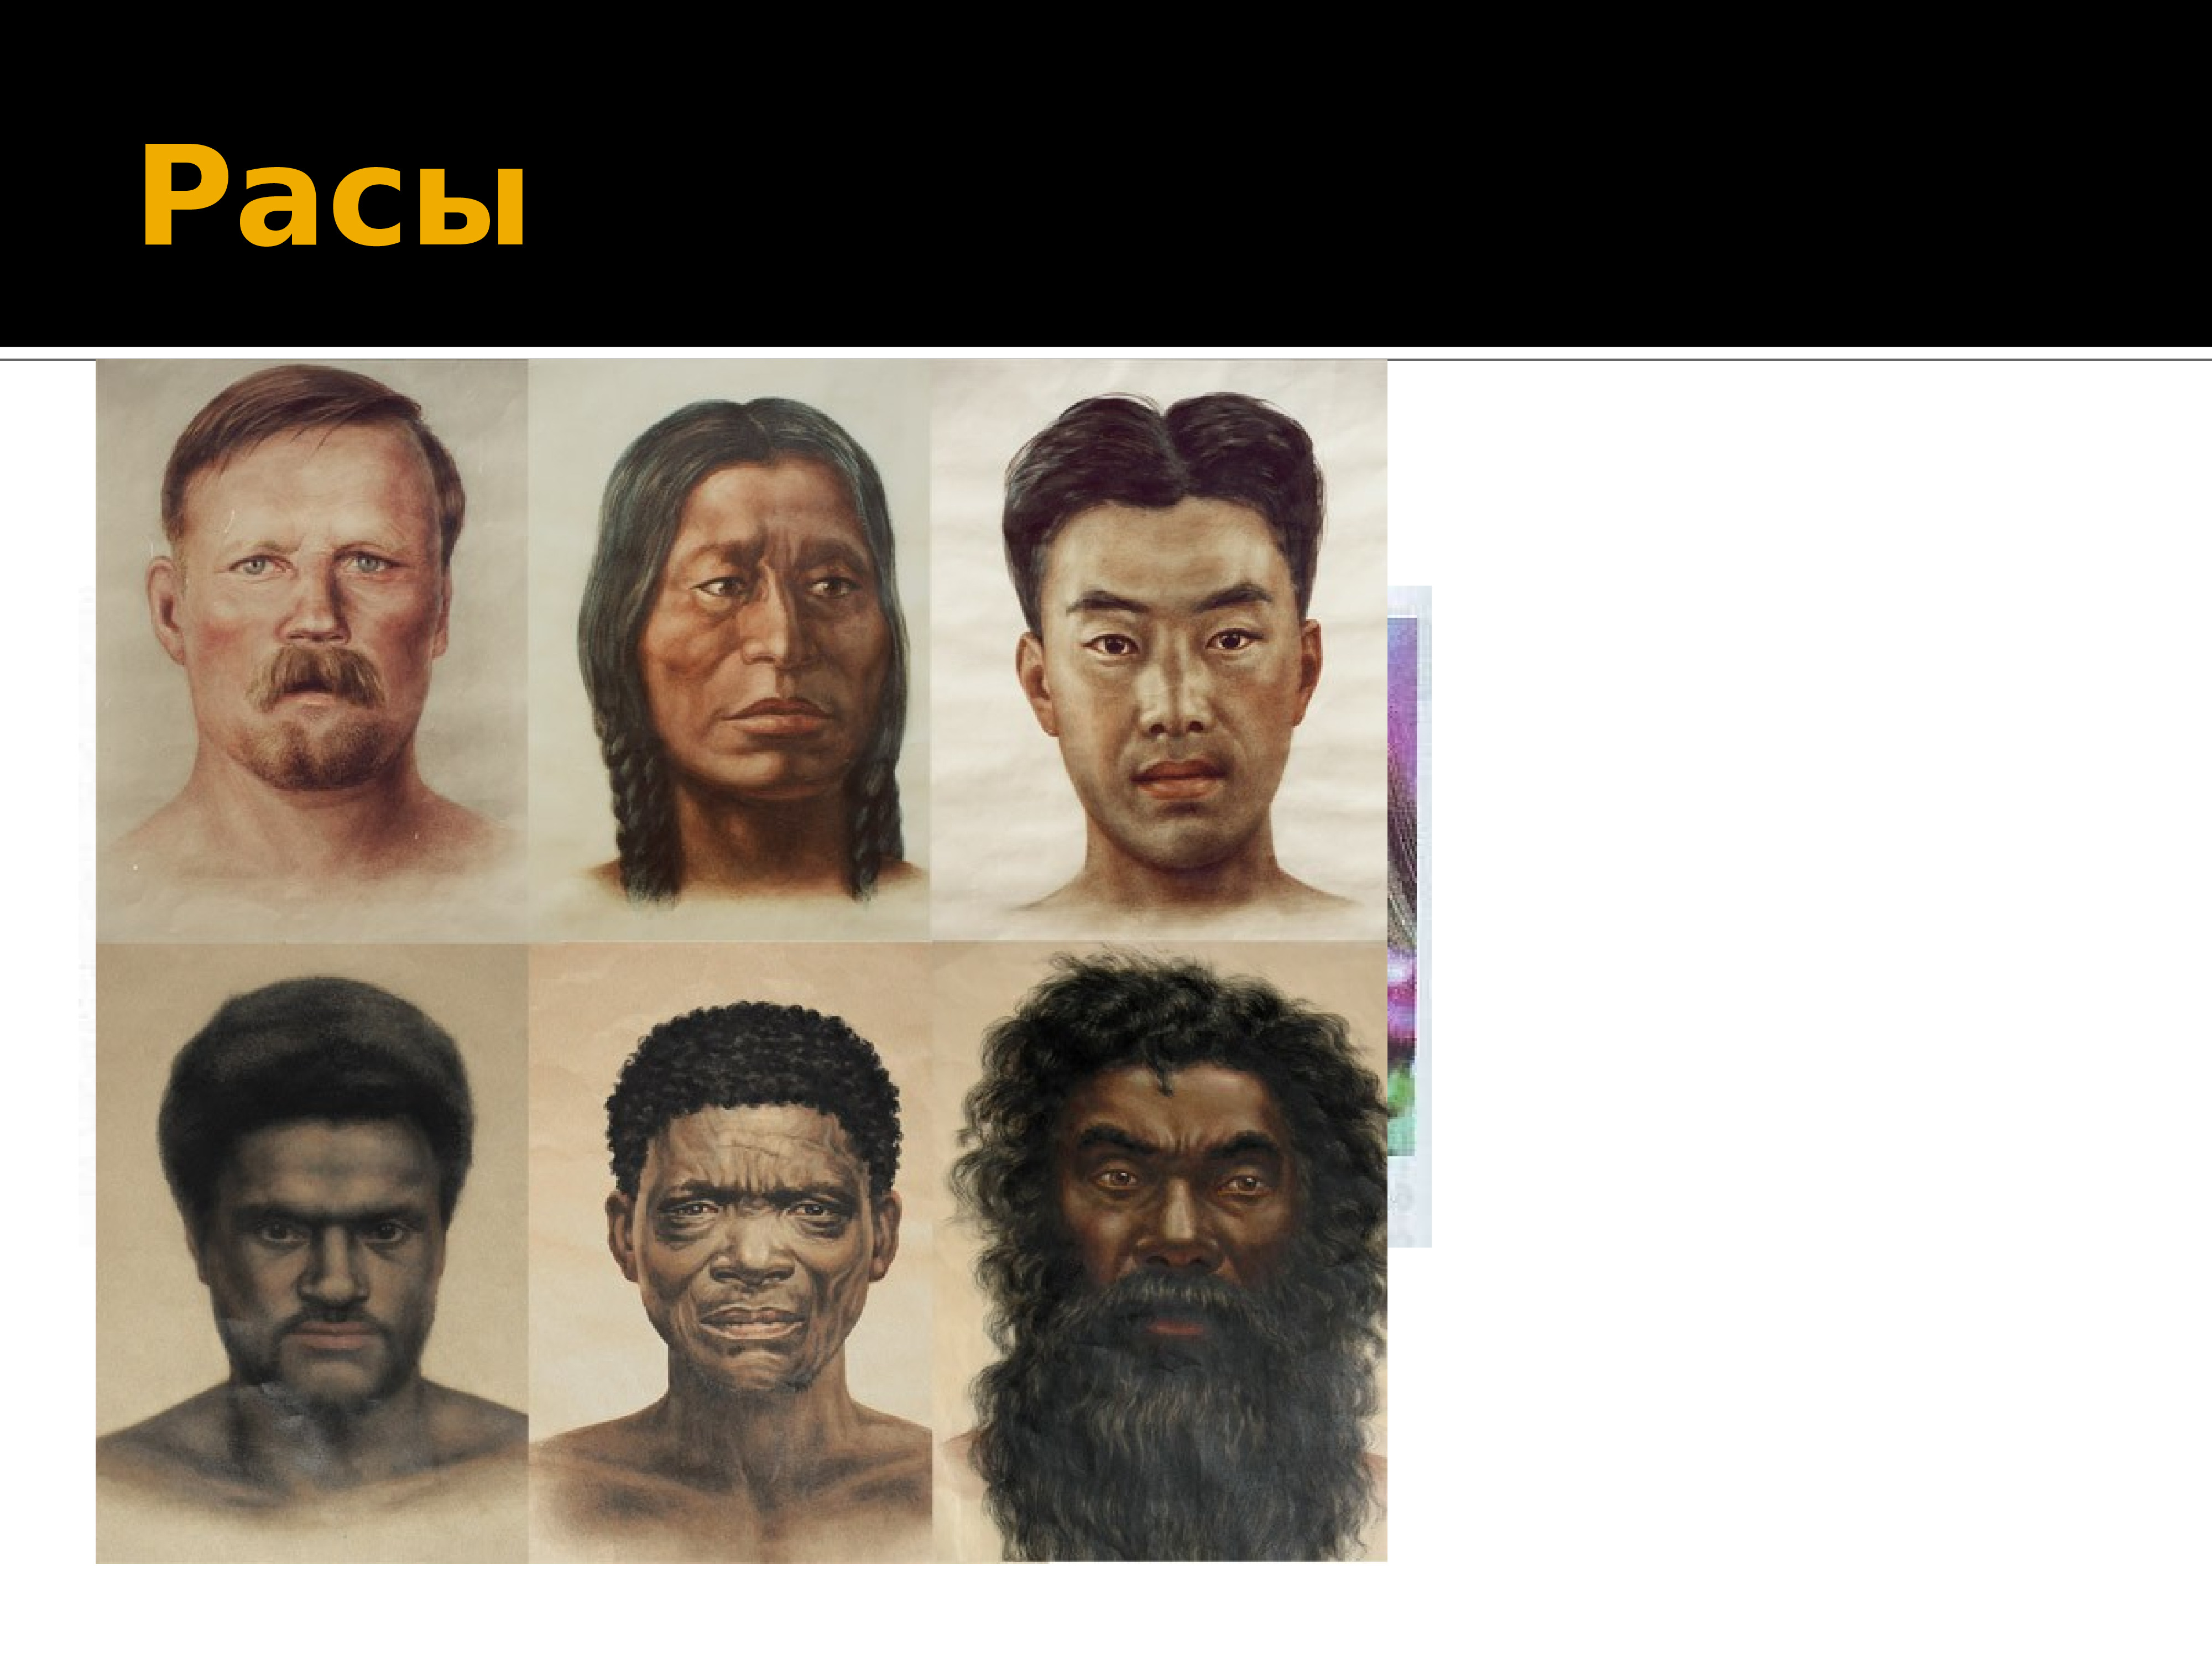 Сходство рас человека. Негроидная раса и монголоидная раса смесь. Расы людей европеоидная монголоидная негроидная. Хомо сапиенс монголоидную. Понятие раса.